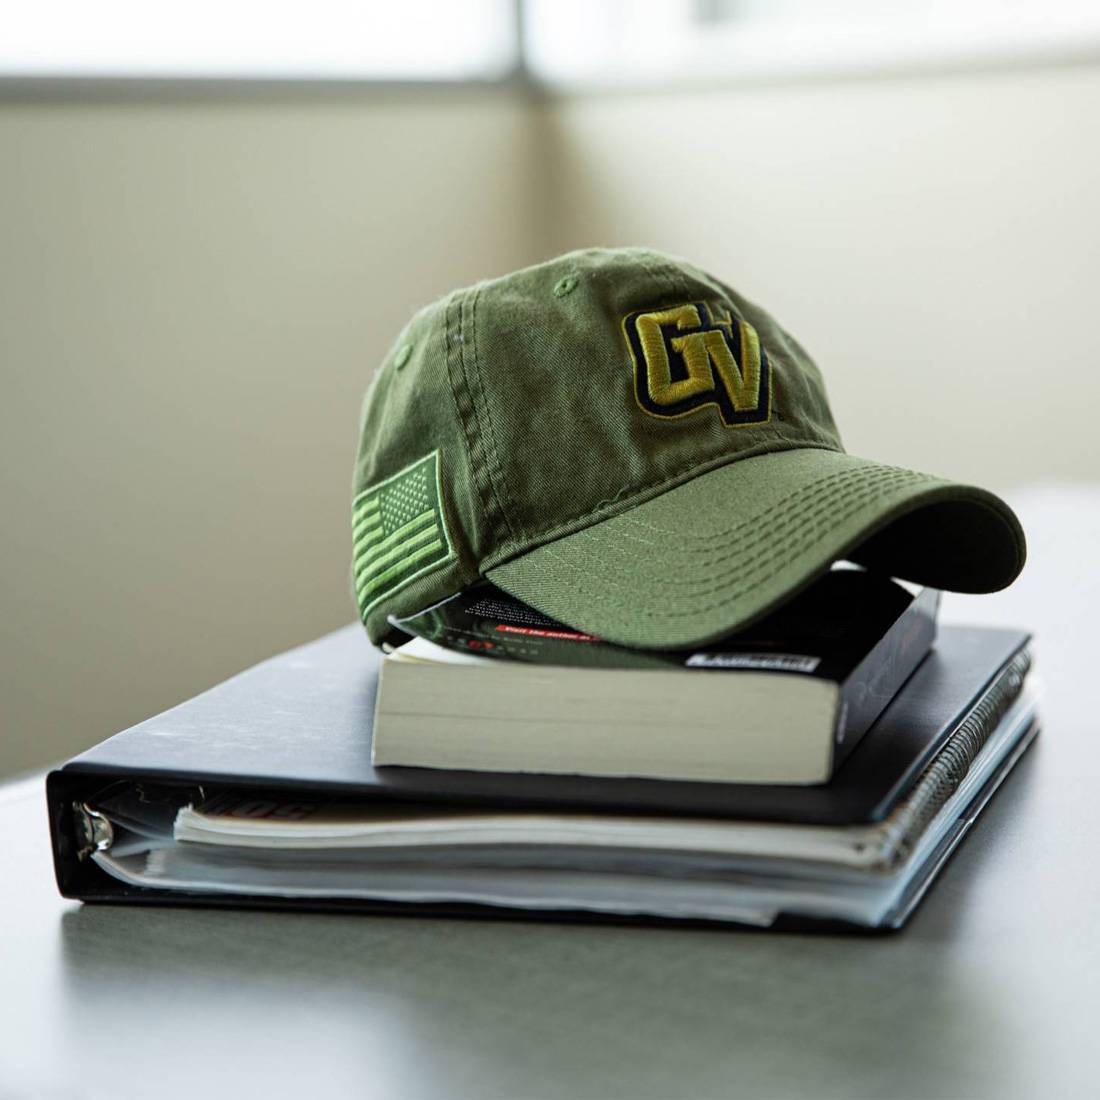 Green GV Vet hat on top of books